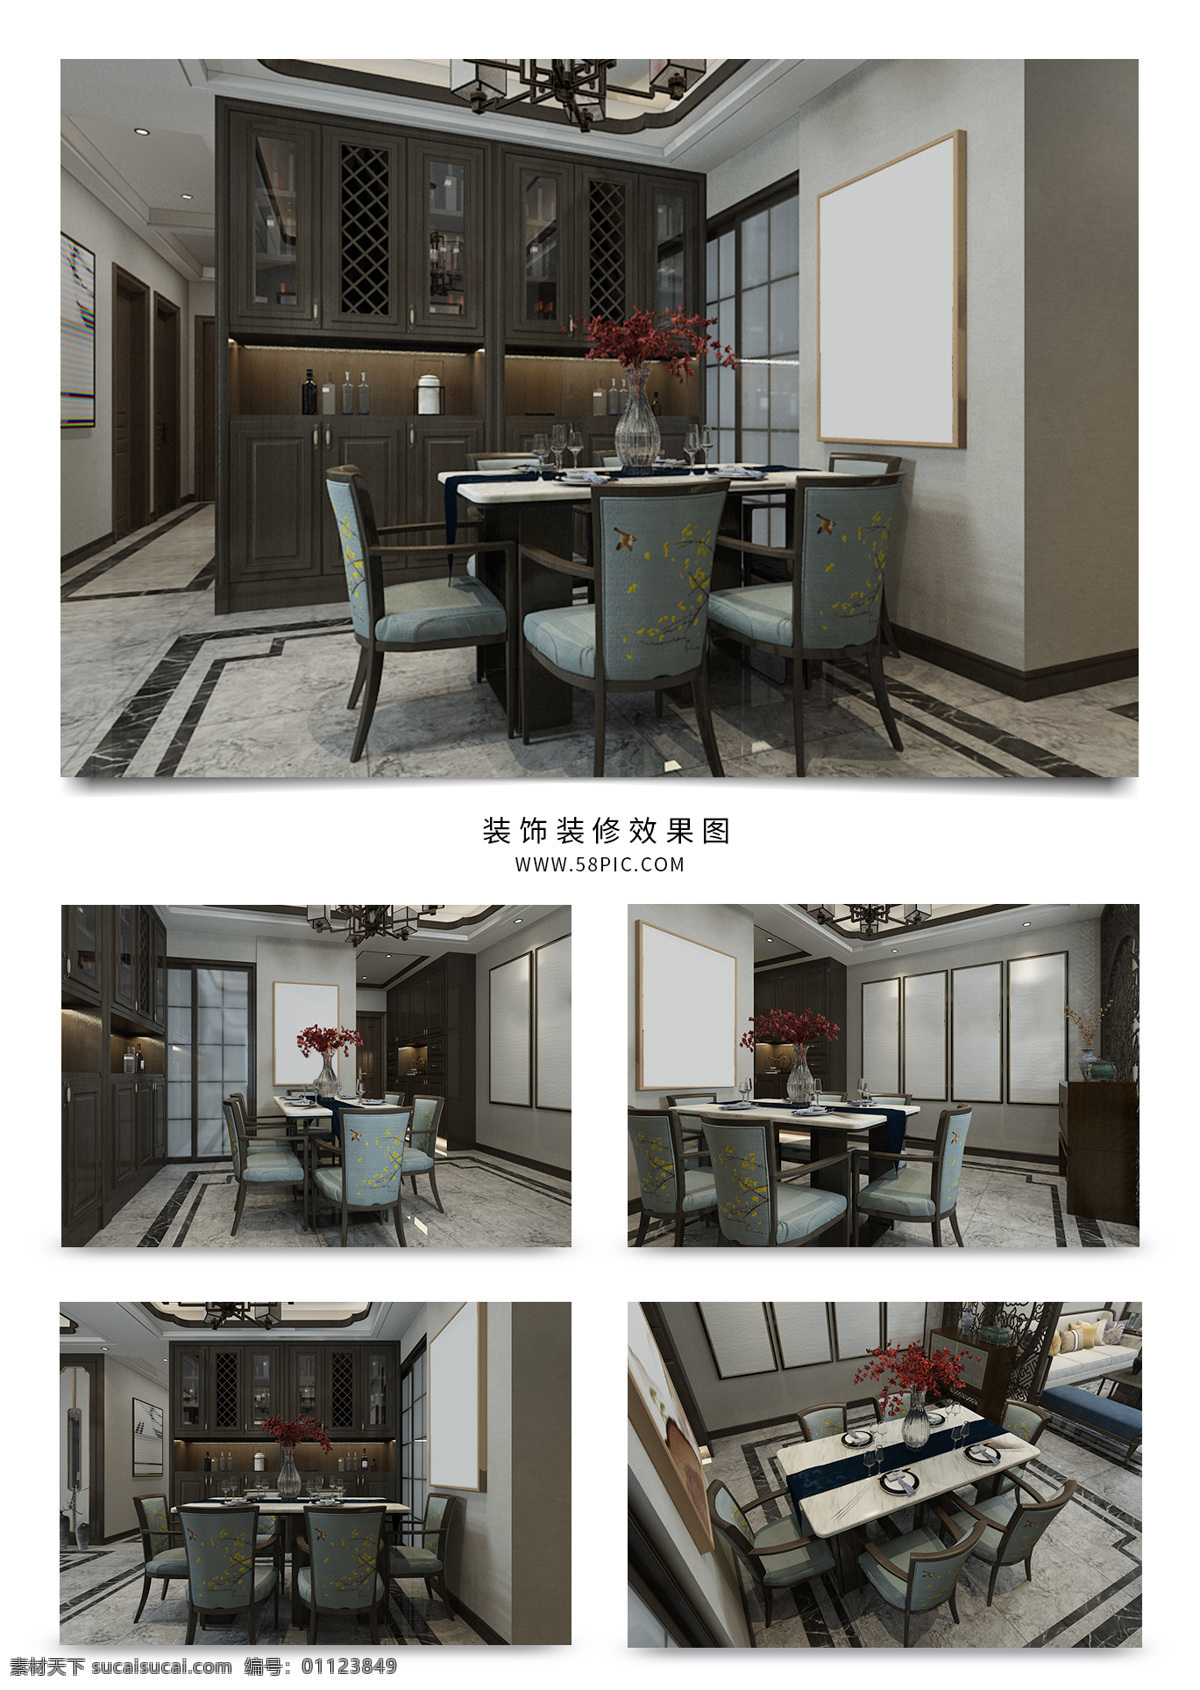 新 中式 风格 精美 餐厅 新中式 效果图 中式餐厅 餐厅效果图 新中式餐厅 中式效果图